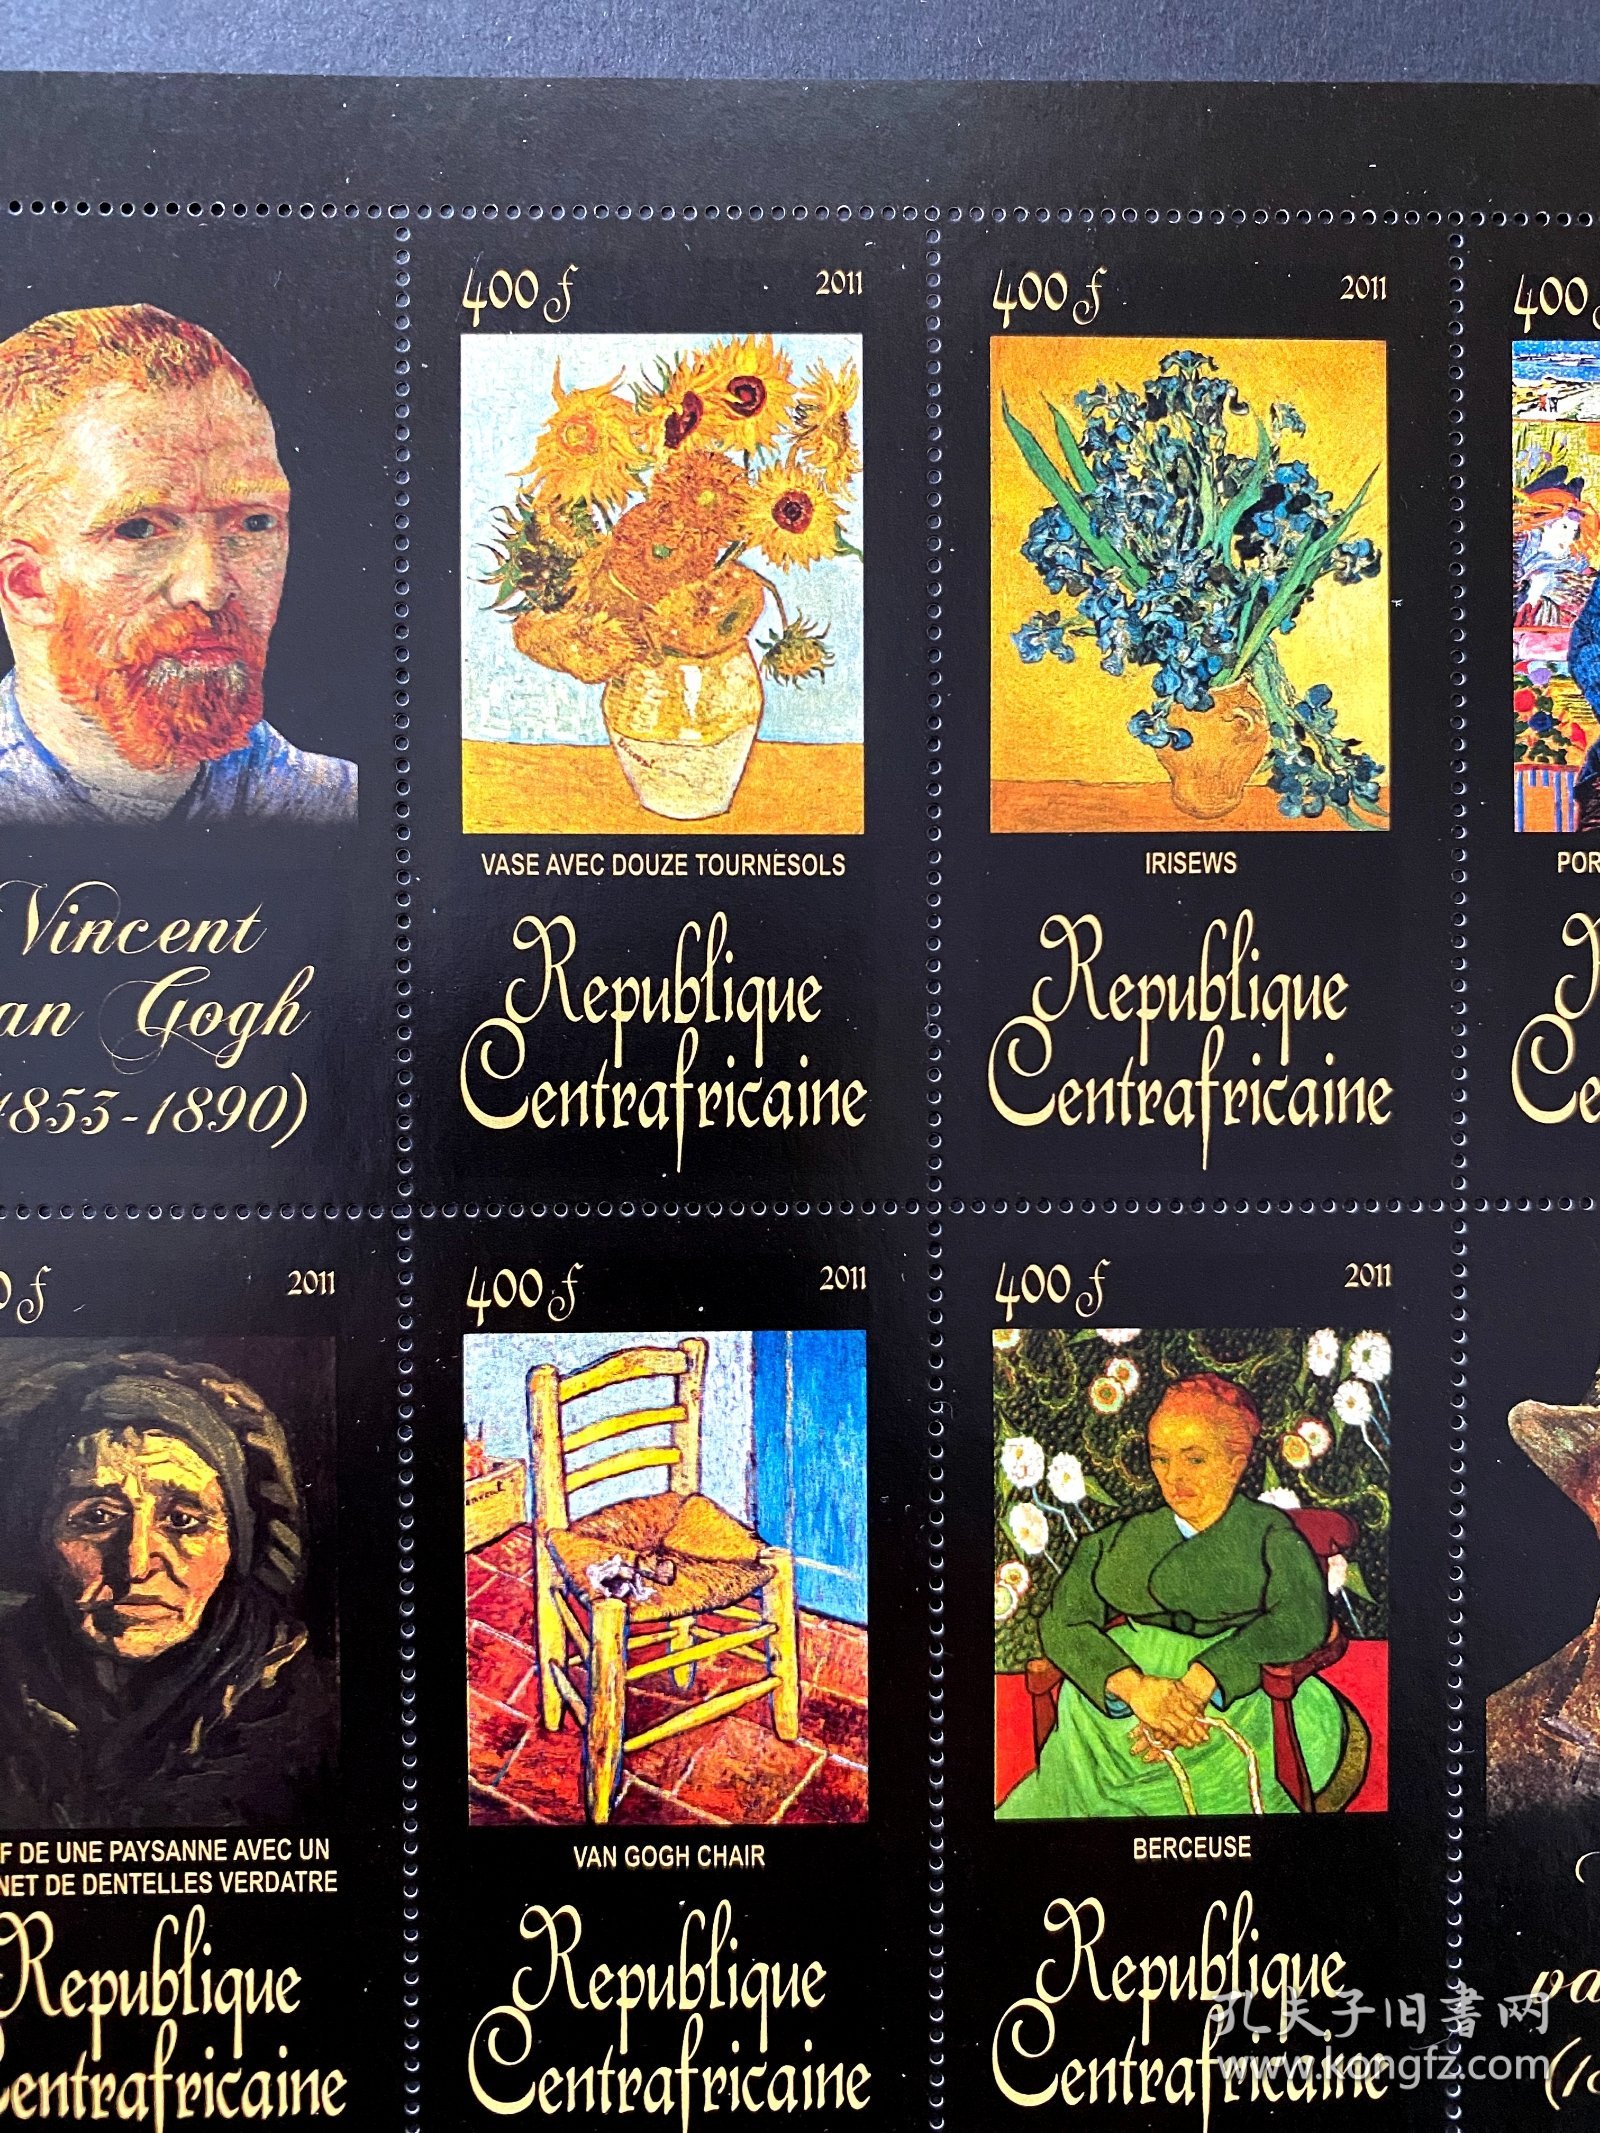 梵高(Van Gogh) ~ 邮票小版，中非官方发行，全新带面值，含向日葵、自画像，花魁等，十分经典，作品在黑背景之下光与色更显亮丽 ~ 艺术收藏品，可藏可挂，适合展览展示 ~ 包邮，包真，送保护袋、保护夹套，便于欣赏，保存 ~